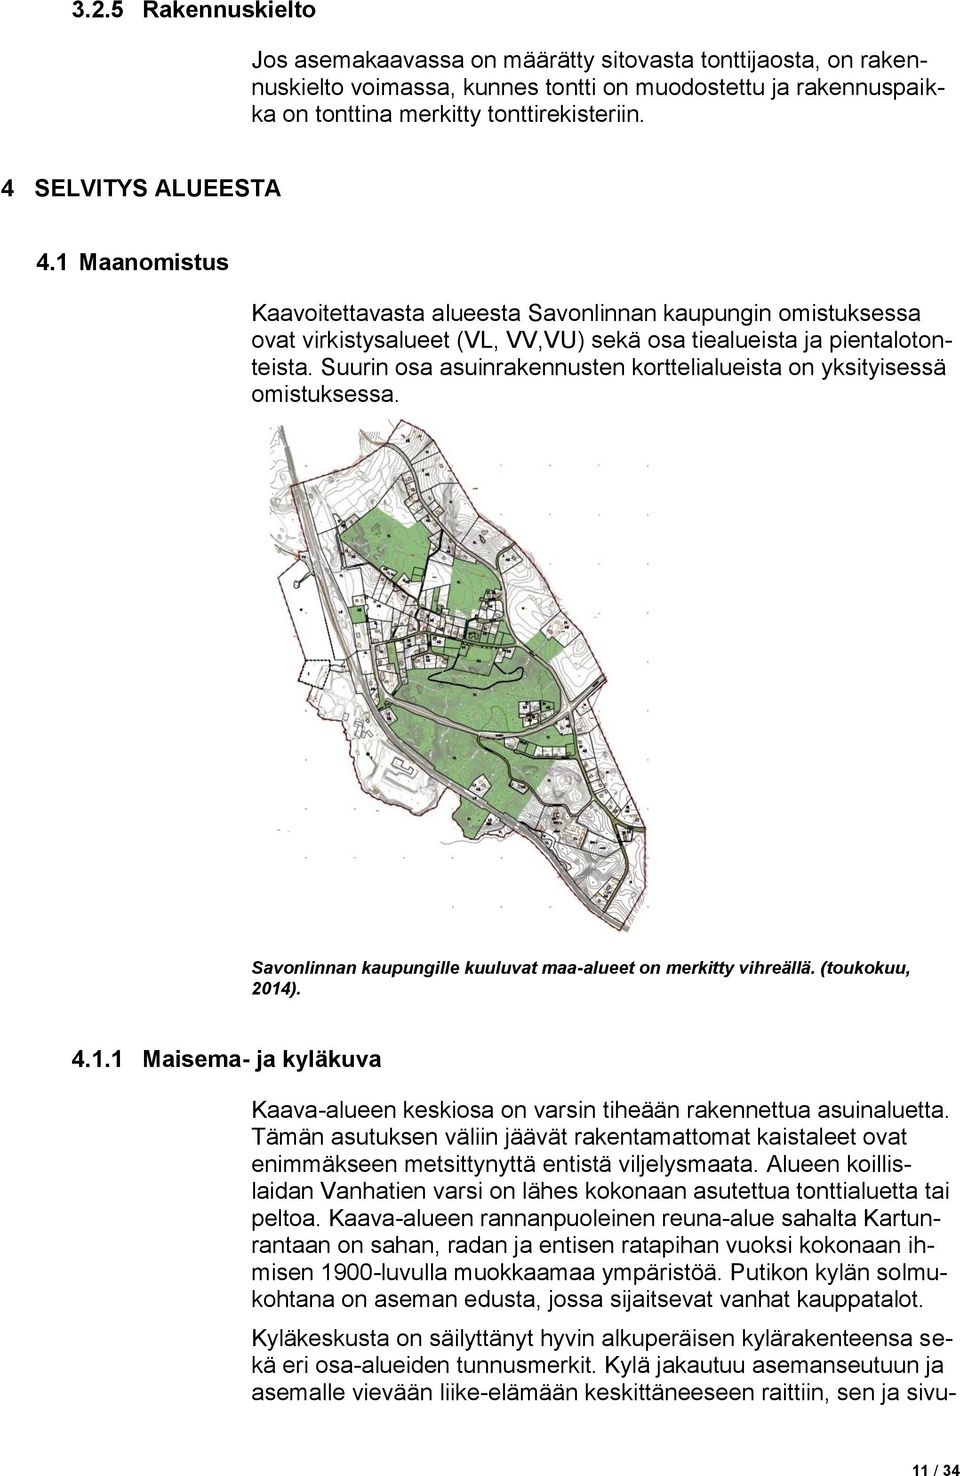 Suurin osa asuinrakennusten korttelialueista on yksityisessä omistuksessa. Savonlinnan kaupungille kuuluvat maa-alueet on merkitty vihreällä. (toukokuu, 2014